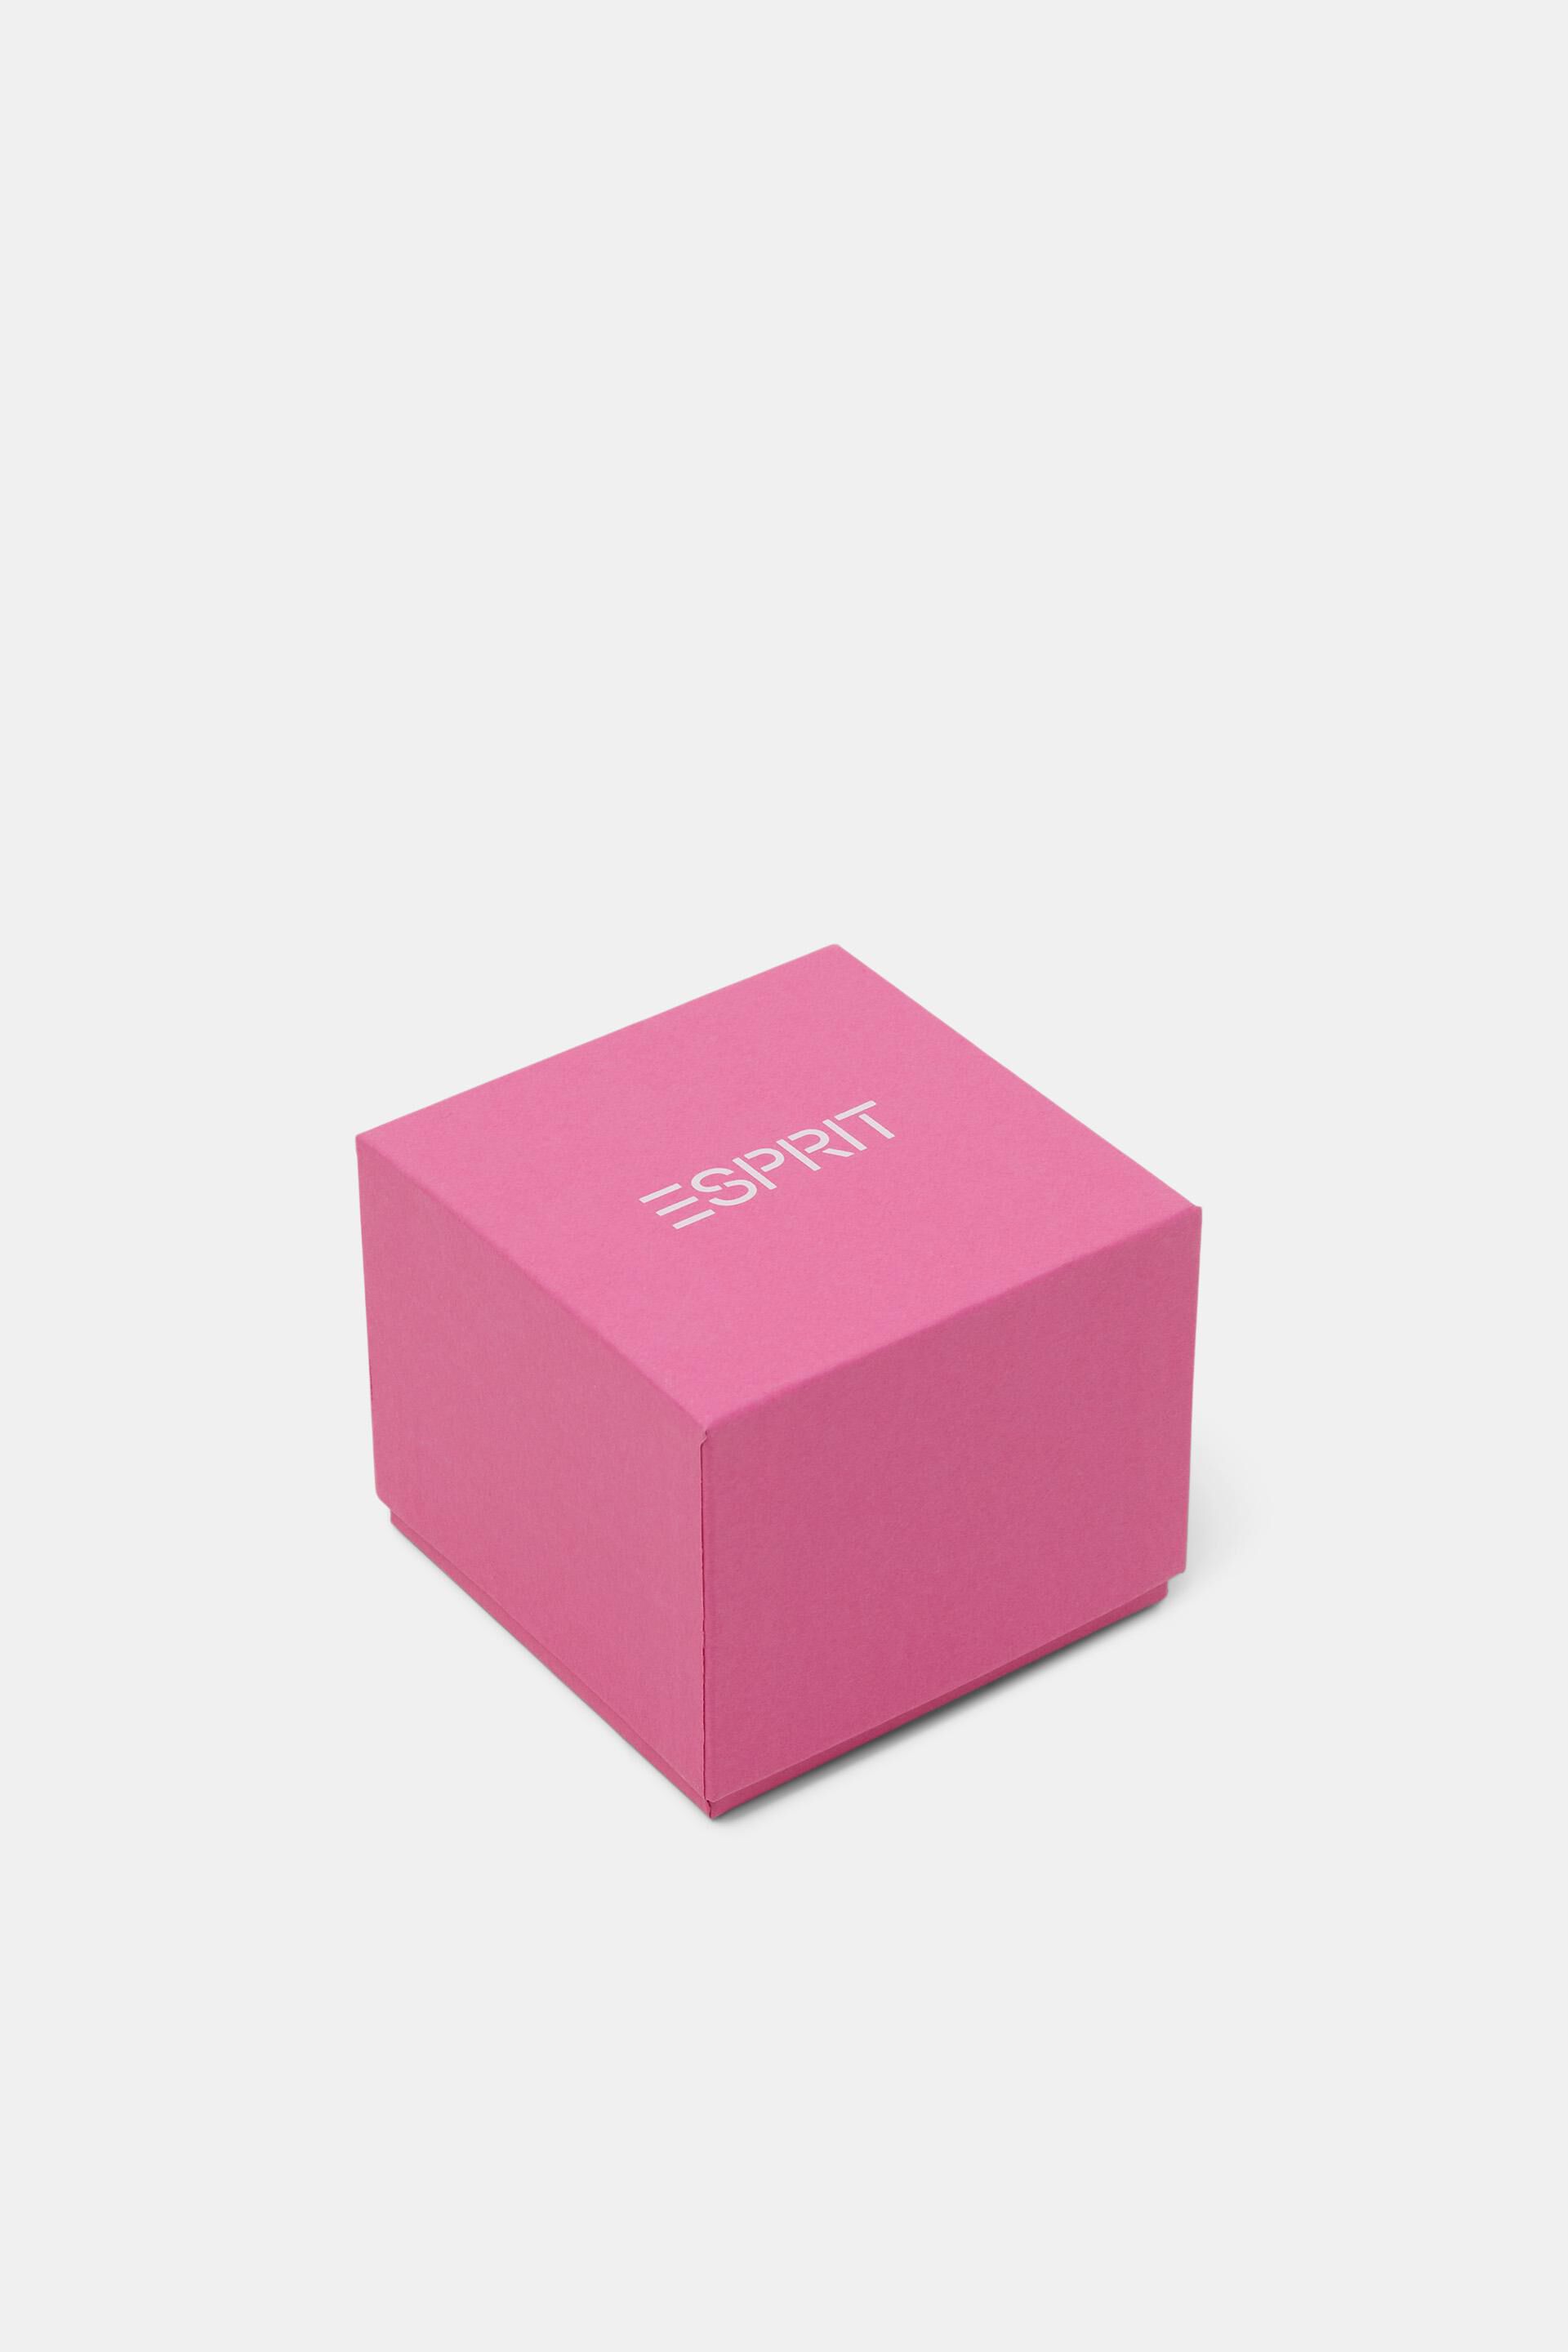 Esprit Online Store Farbige Uhr mit Kautschukband